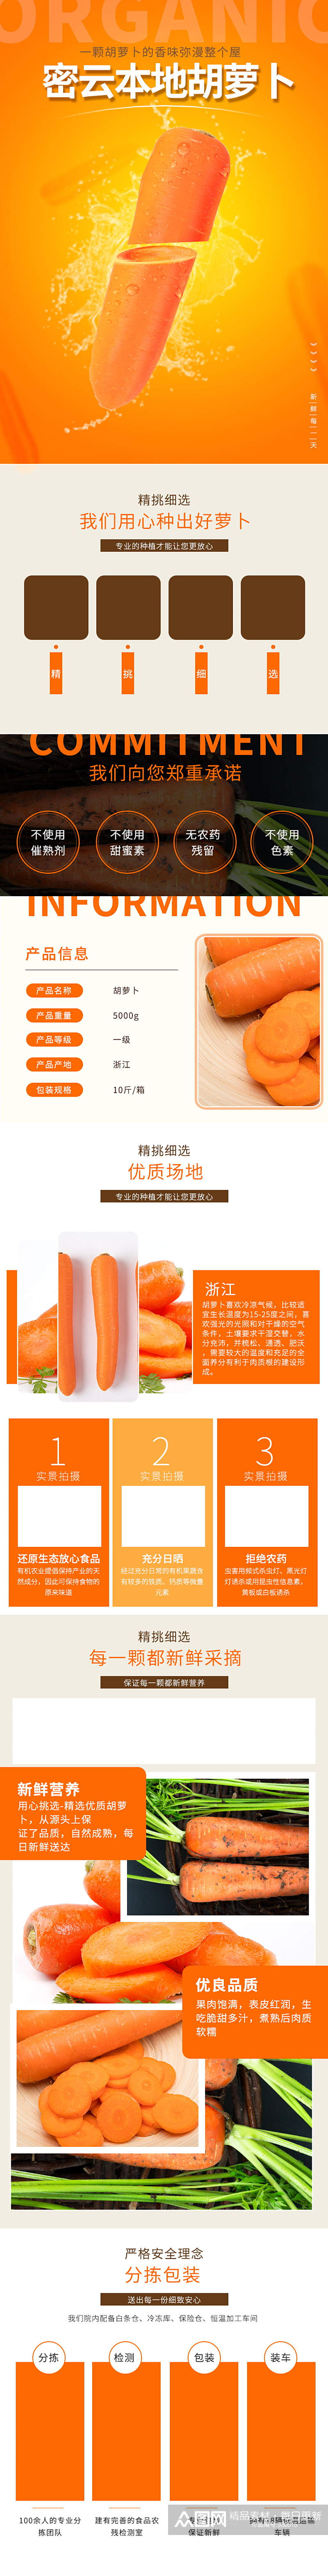 橙色有机蔬菜胡萝卜食品描述详情页素材